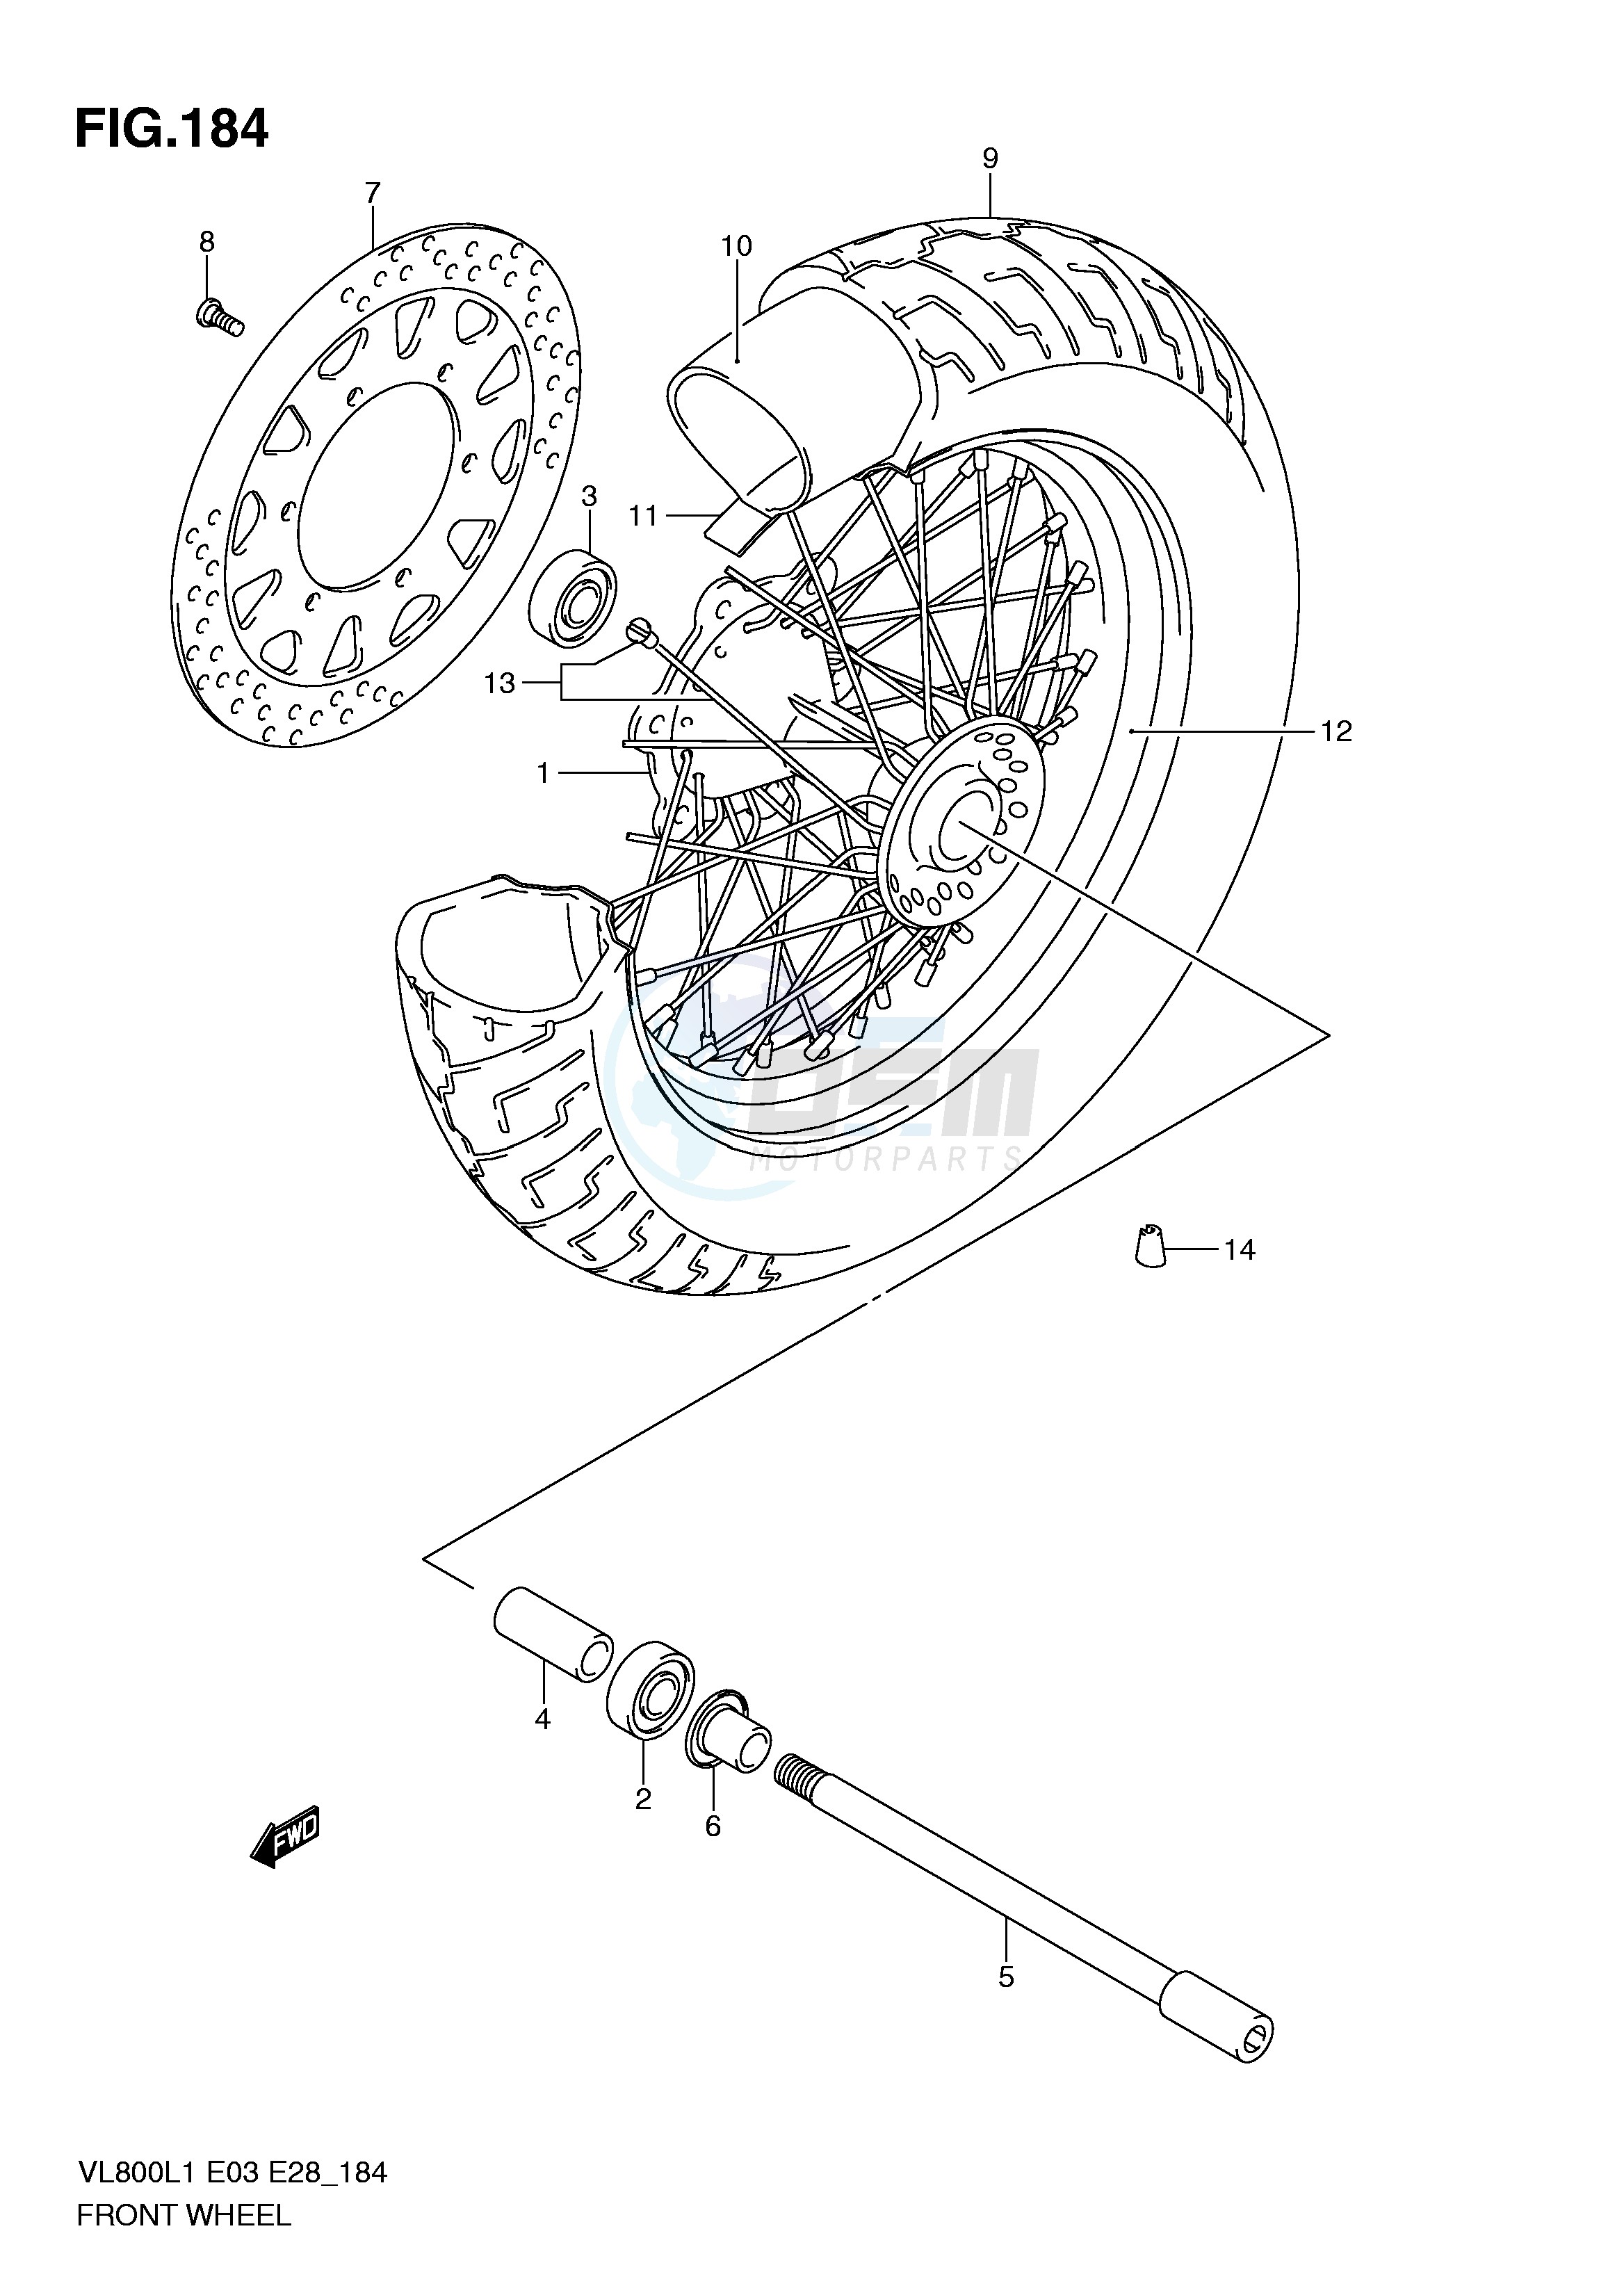 FRONT WHEEL (VL800L1 E28) blueprint